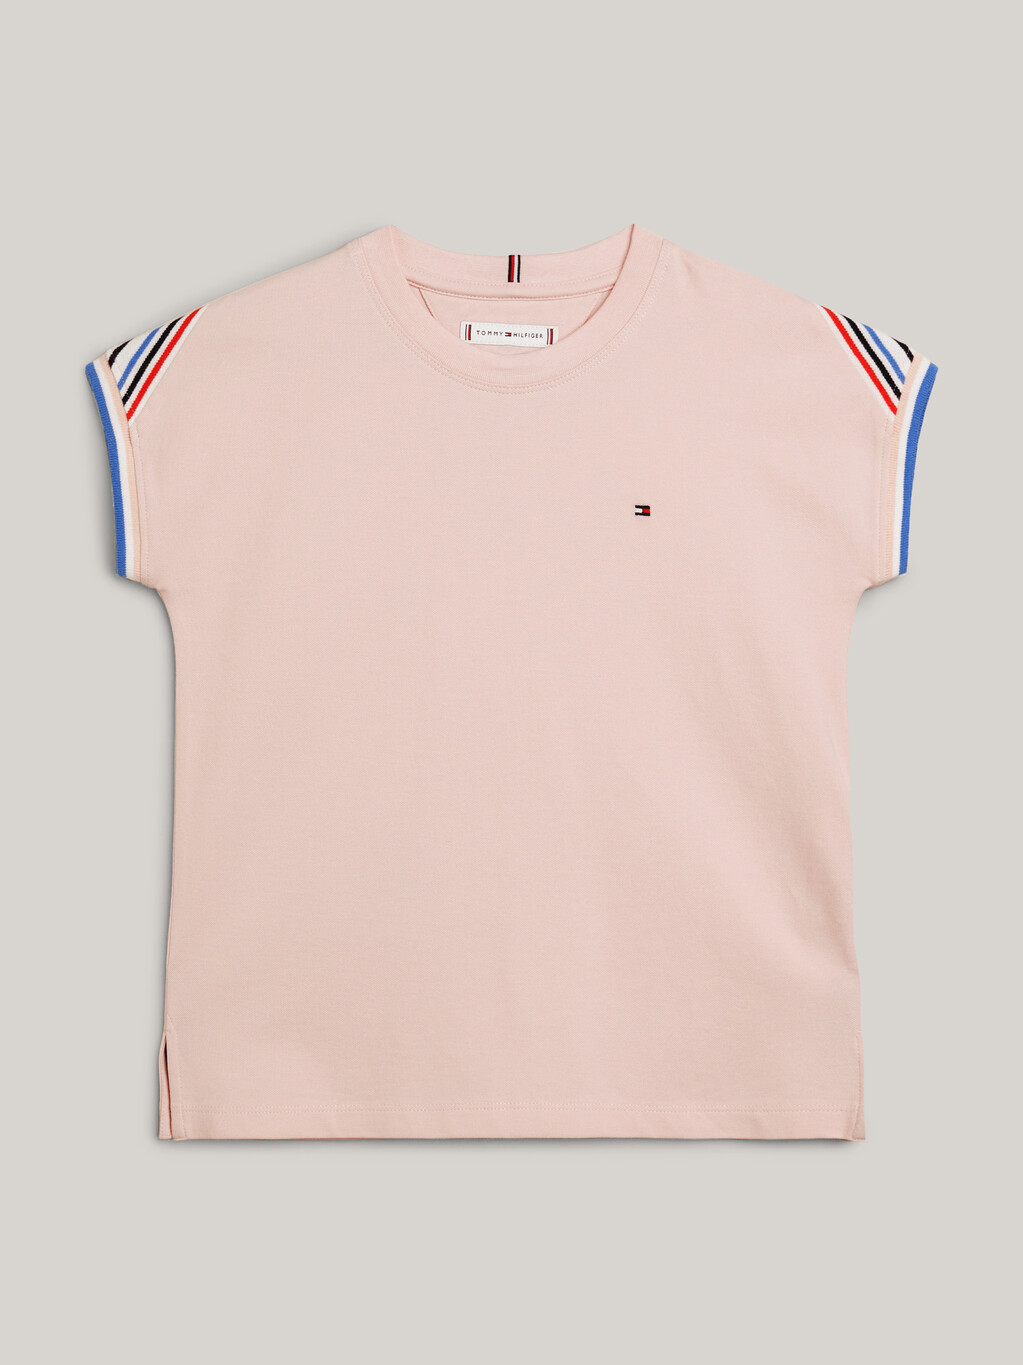 尖袖休閒版型 T 恤, Whimsy Pink, hi-res